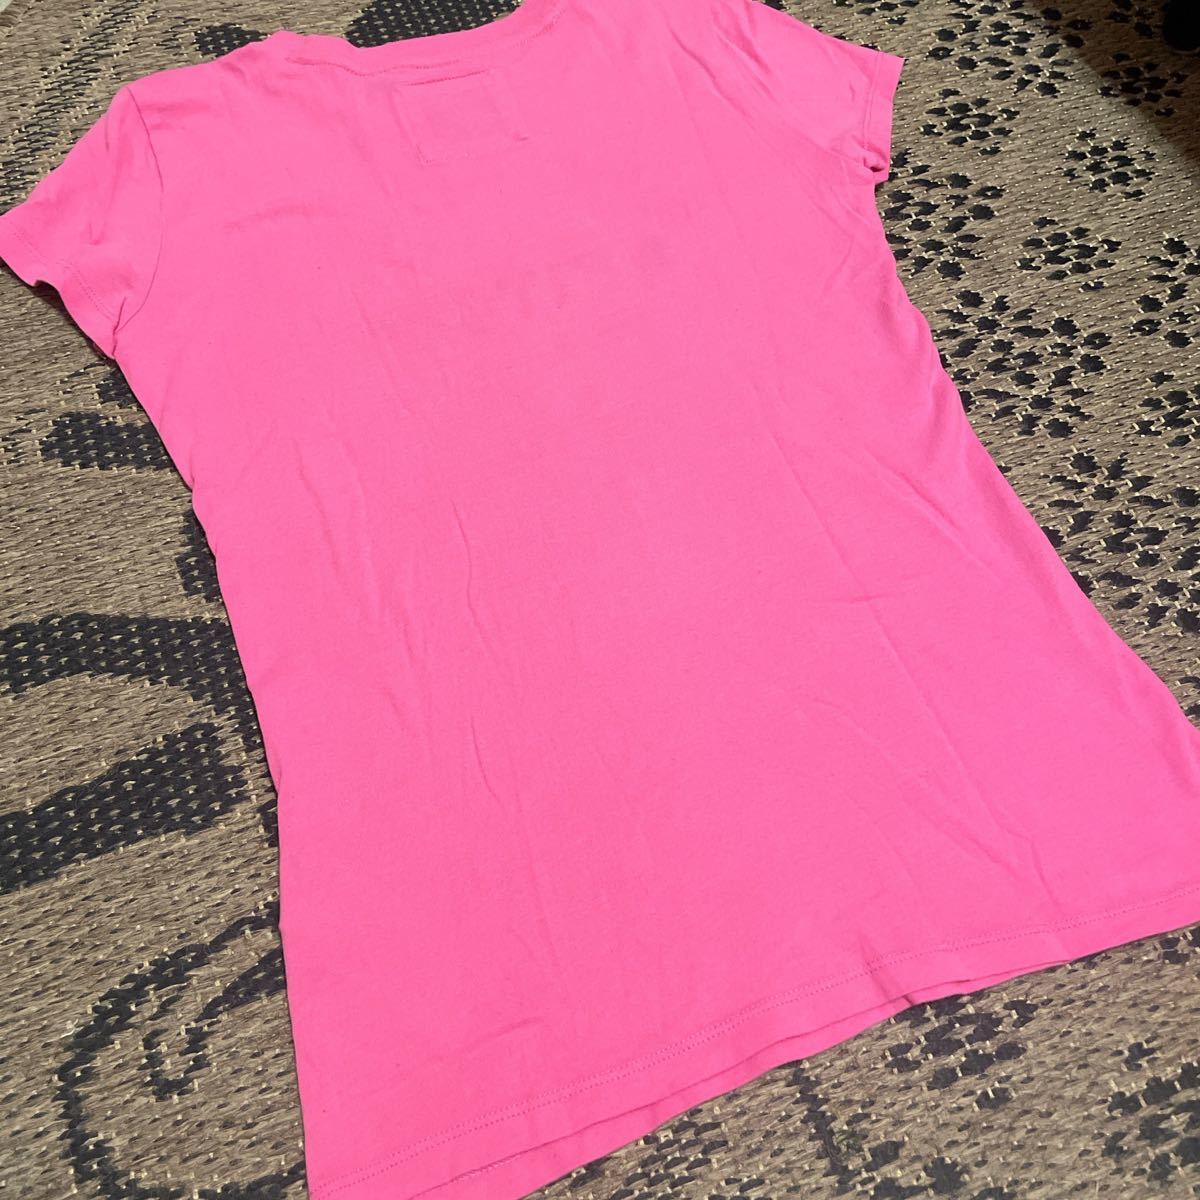 価格相談禁止 アバクロンビー&フィッチ アバクロ Tシャツ S トップス A&F ピンク ネイビー イエロー(試着のみ) 半袖